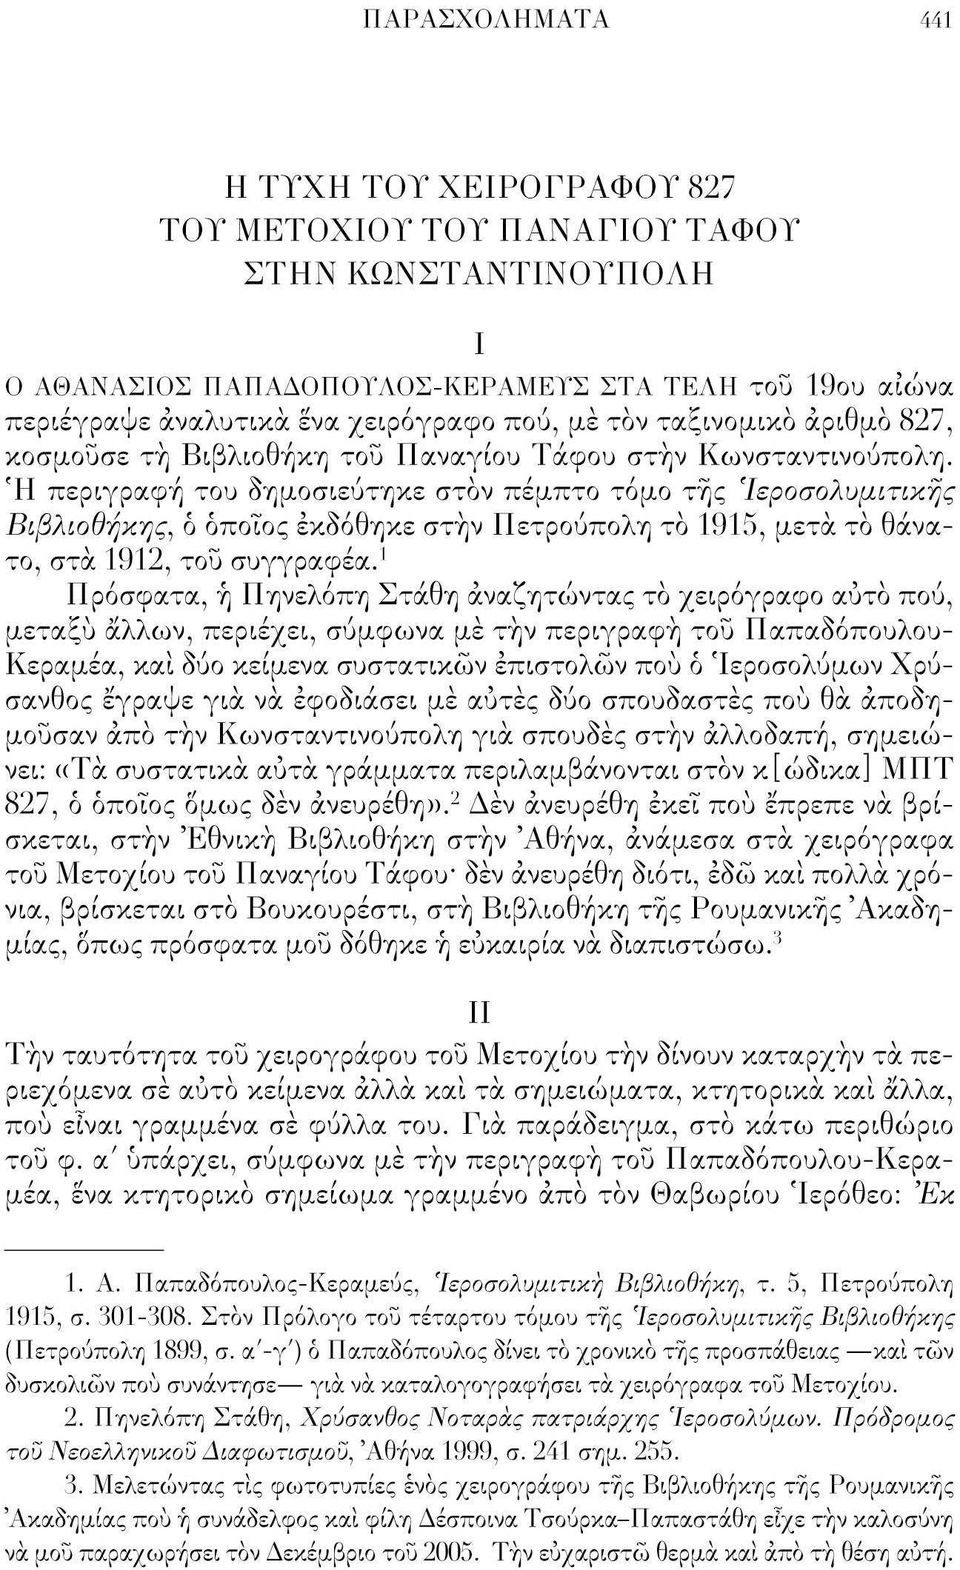 Ή περιγραφή του δημοσιεύτηκε στον πέμπτο τόμο της Ίεροσολυμιτιχης Βιβλιοθήκης, ο οποίος εκδόθηκε στην Πετρούπολη το 1915, μετά το θάνατο, στα 1912, του συγγραφέα.